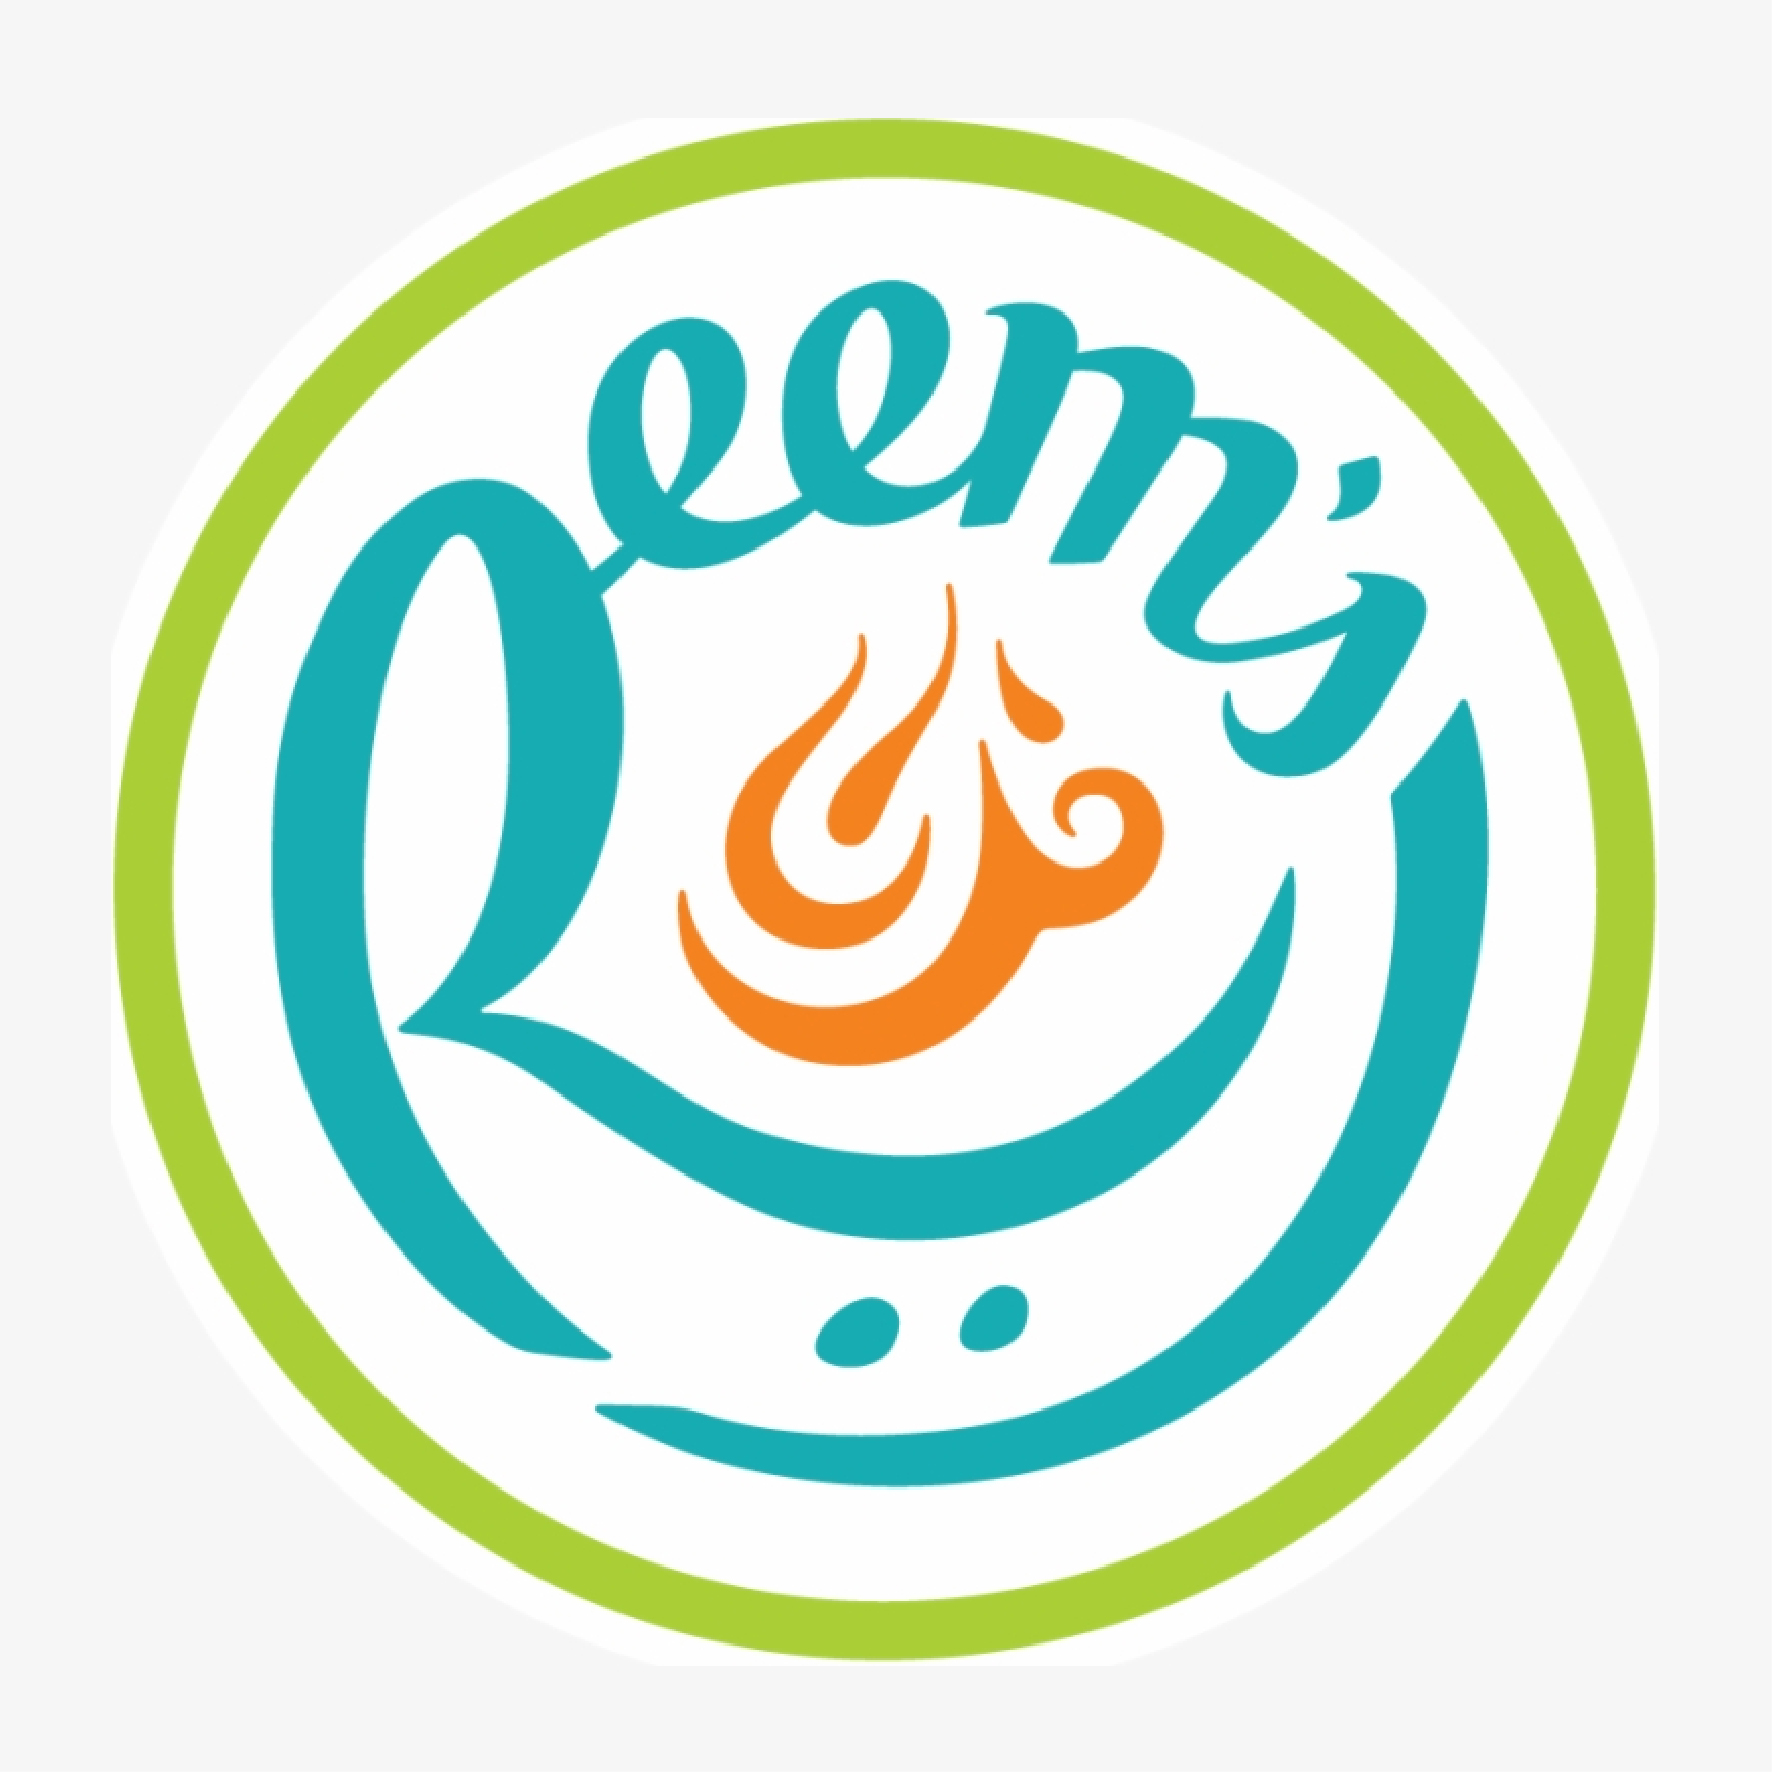 Reem's Logo